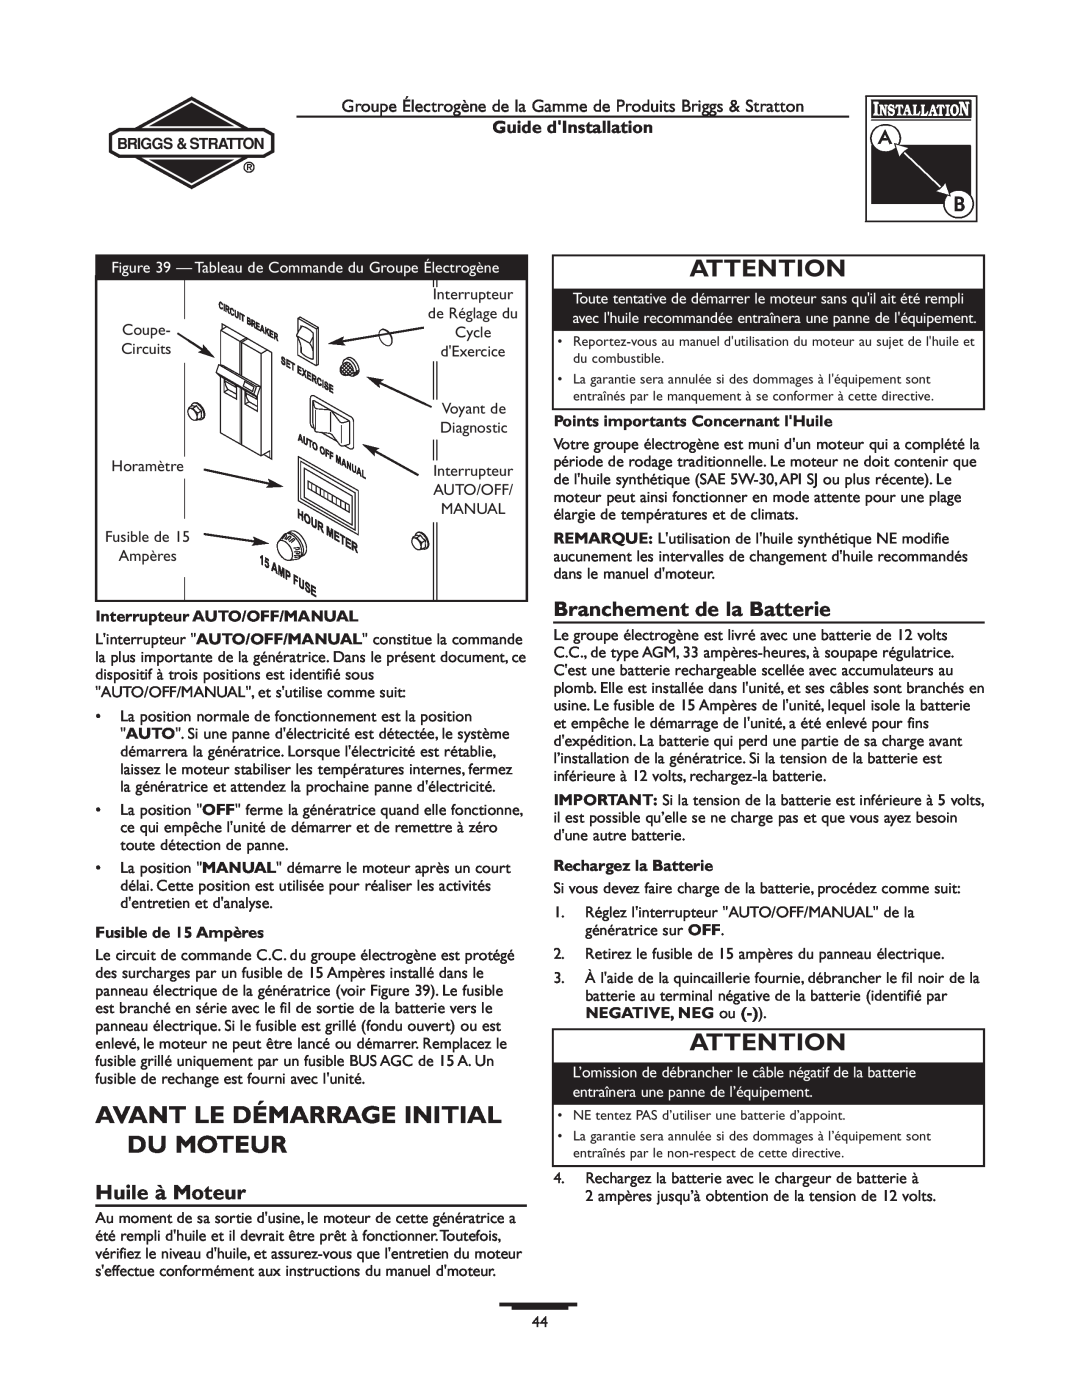 Briggs & Stratton 01938-0, 01815-0 manual Avant Le Démarrage Initial Du Moteur, Huile à Moteur, Branchement de la Batterie 